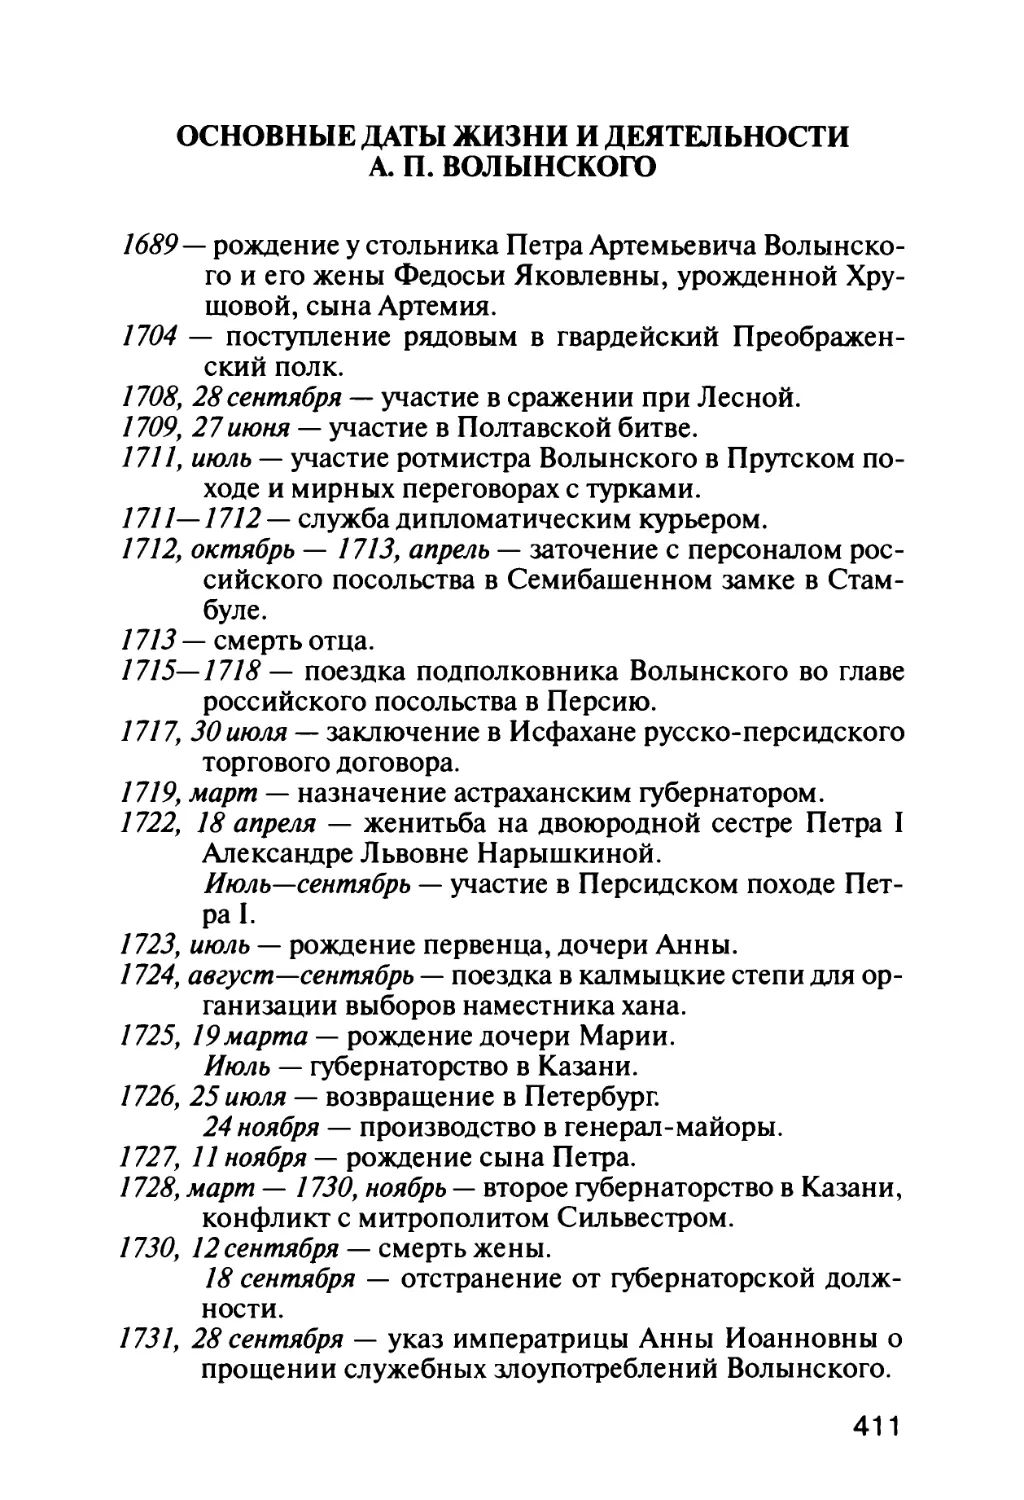 Основные даты жизнии деятельности А. П. Волынского